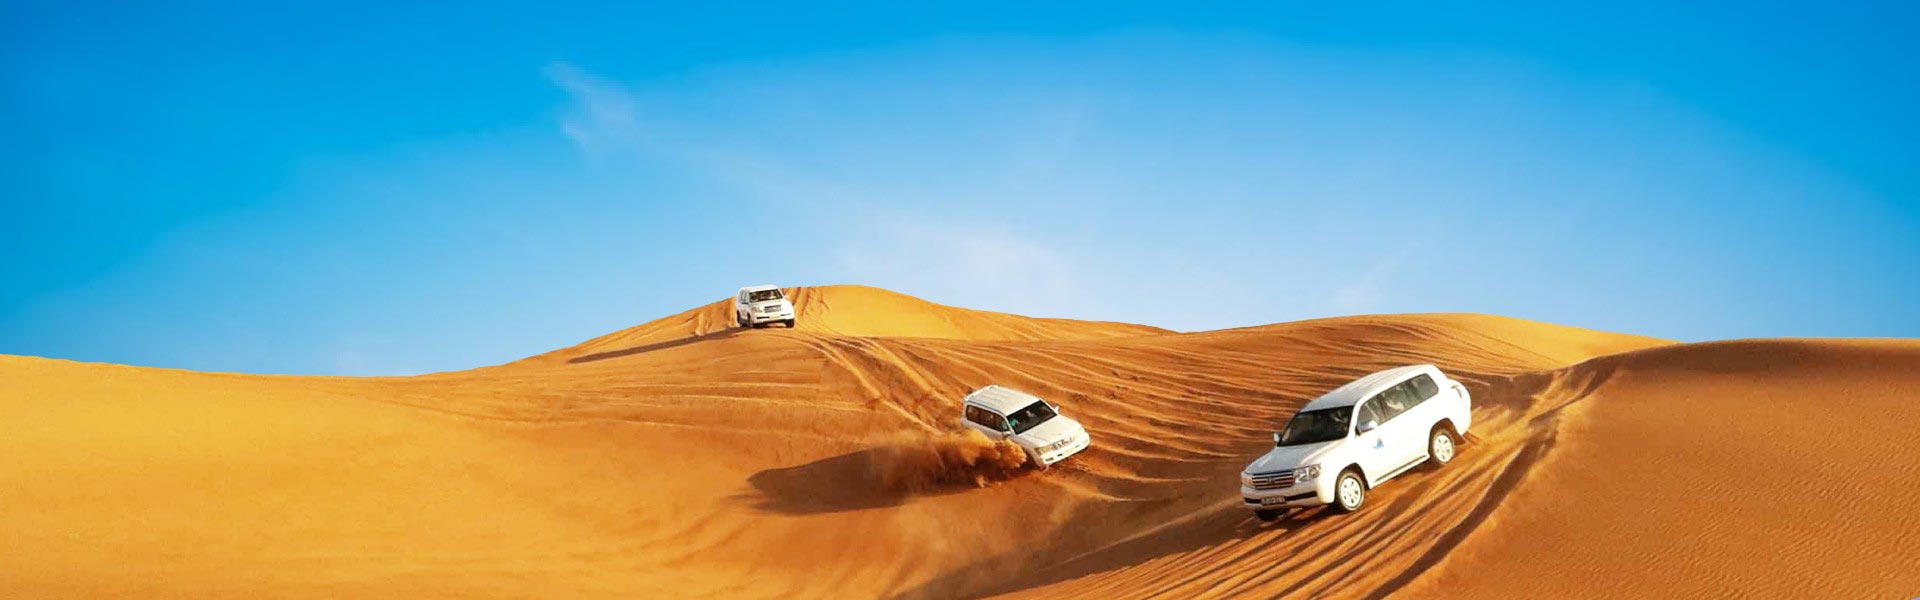 Banner image of 3 white cars in Dubai desert taking tourist for desert safari